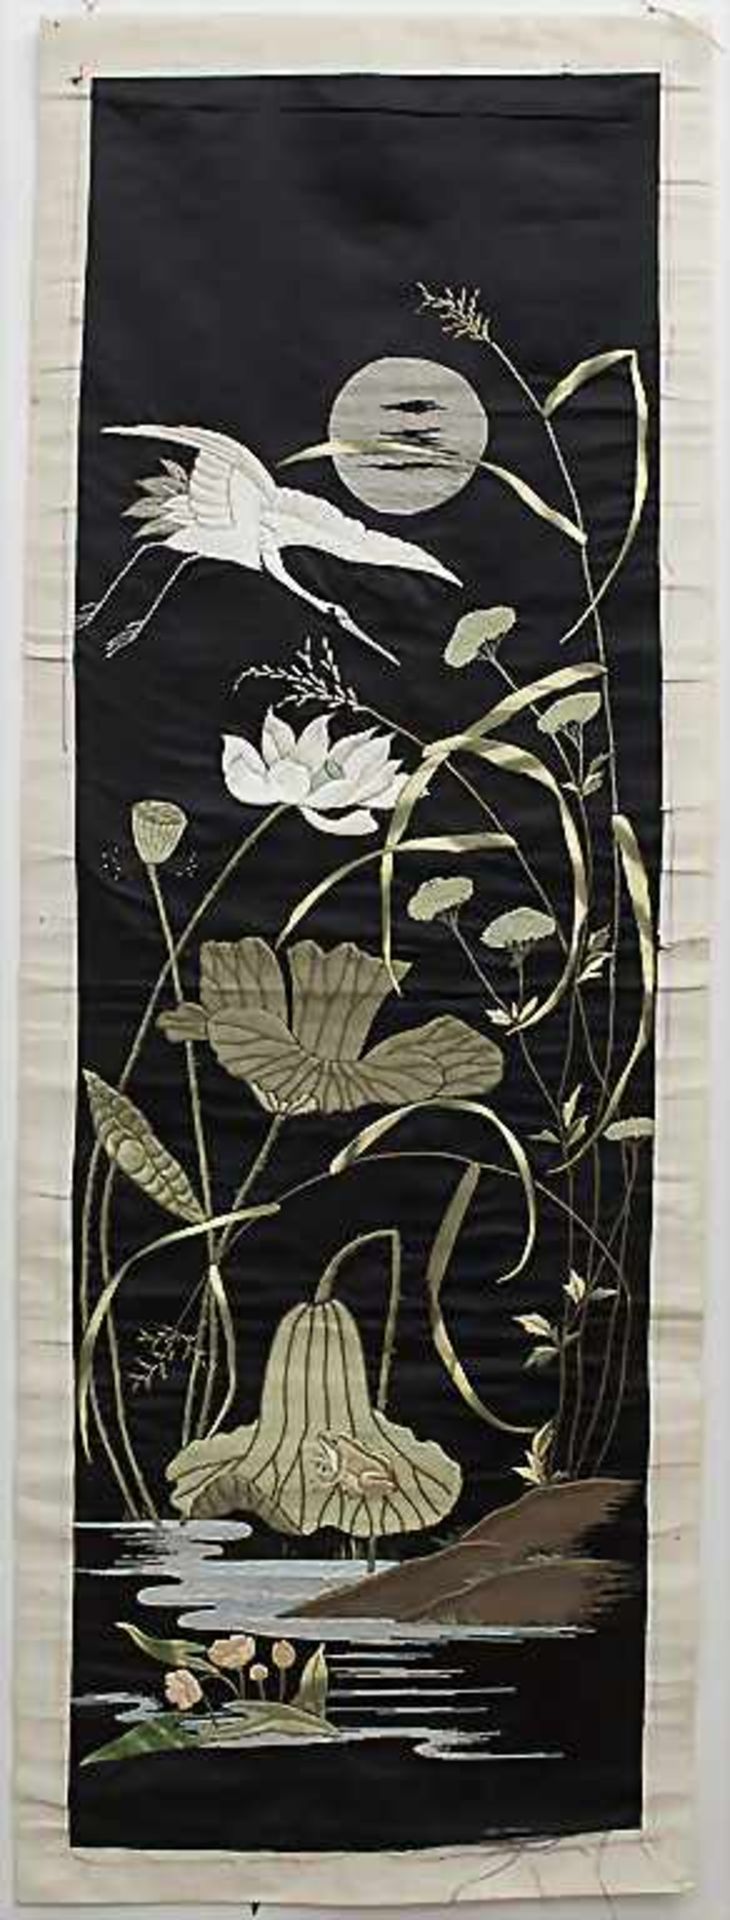 Seiden-Wandbehang 'Kranich'/ A silk wall hanging 'Crane', China, 1. Hälfte 20. Jh.Material: